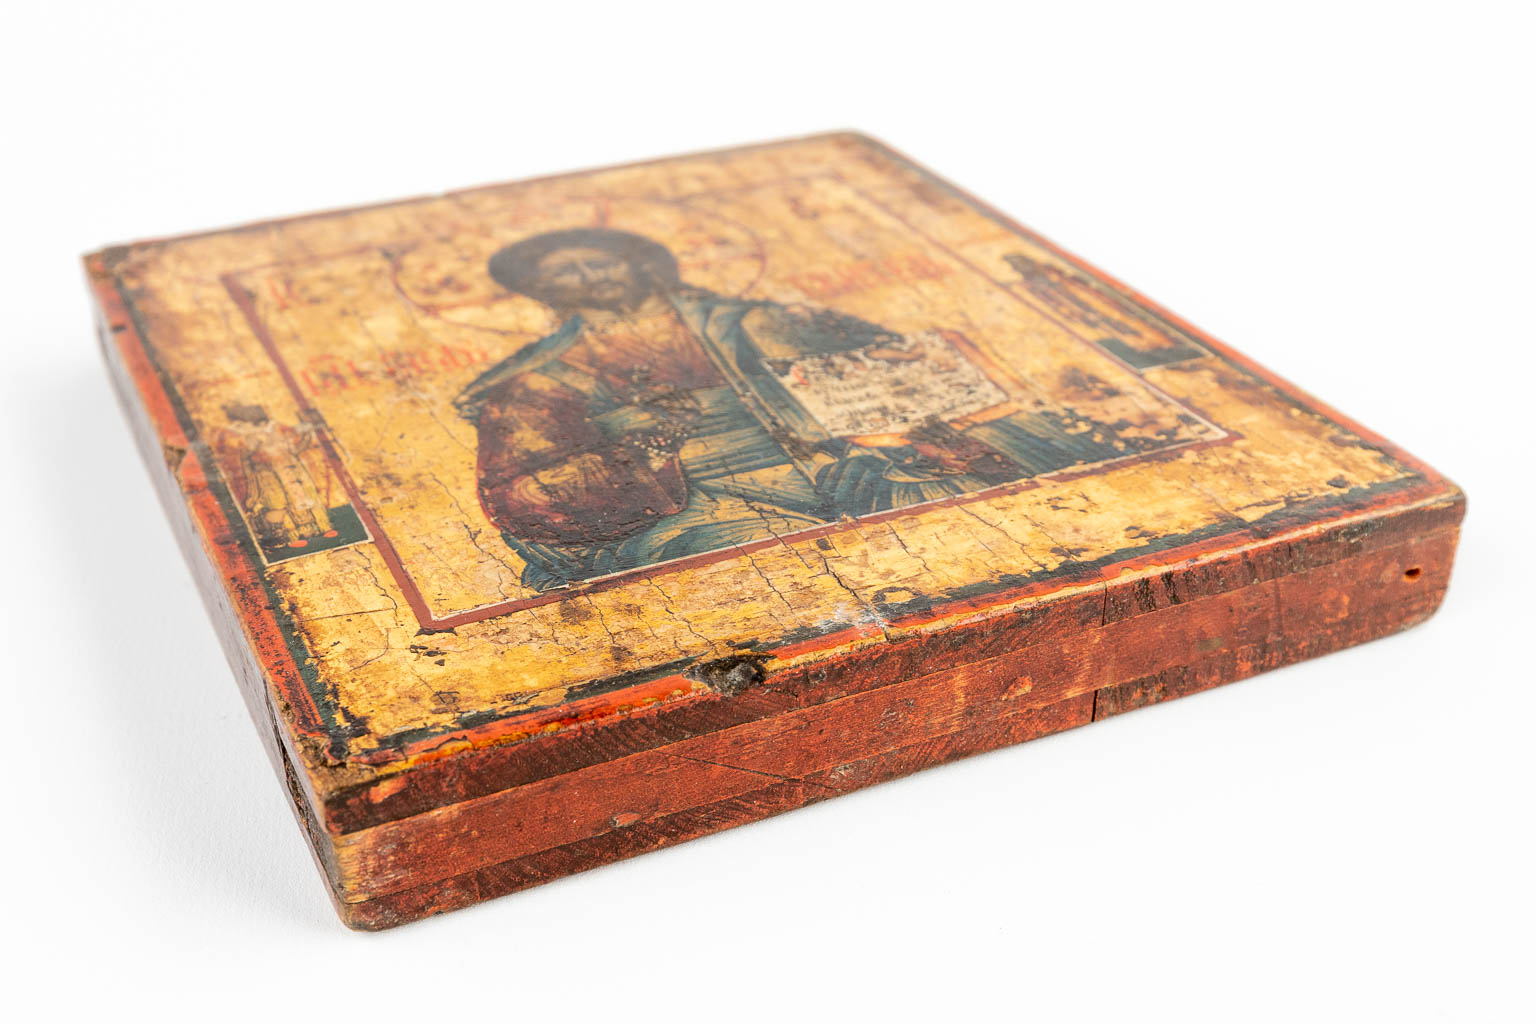 Een kleine Oost-Europese icoon met afbeelding van Jezus Christus. 19de eeuw. (W:21,5 x H:25 cm)